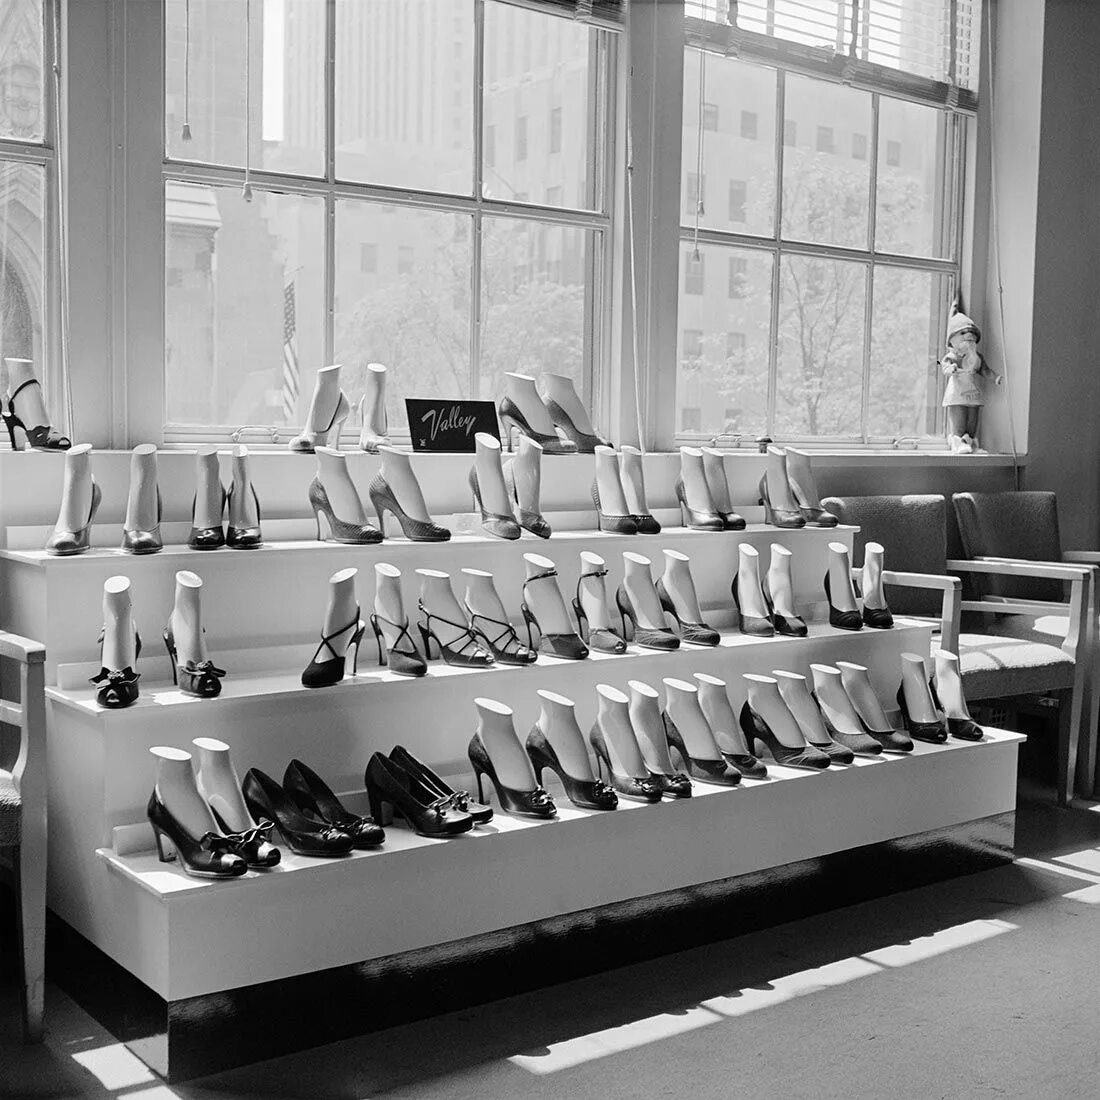 Нью Йорка 50-х Вивиан Майер,. Вивиан Майер фотограф. Советская обувь. Витрины магазинов 50х годов.